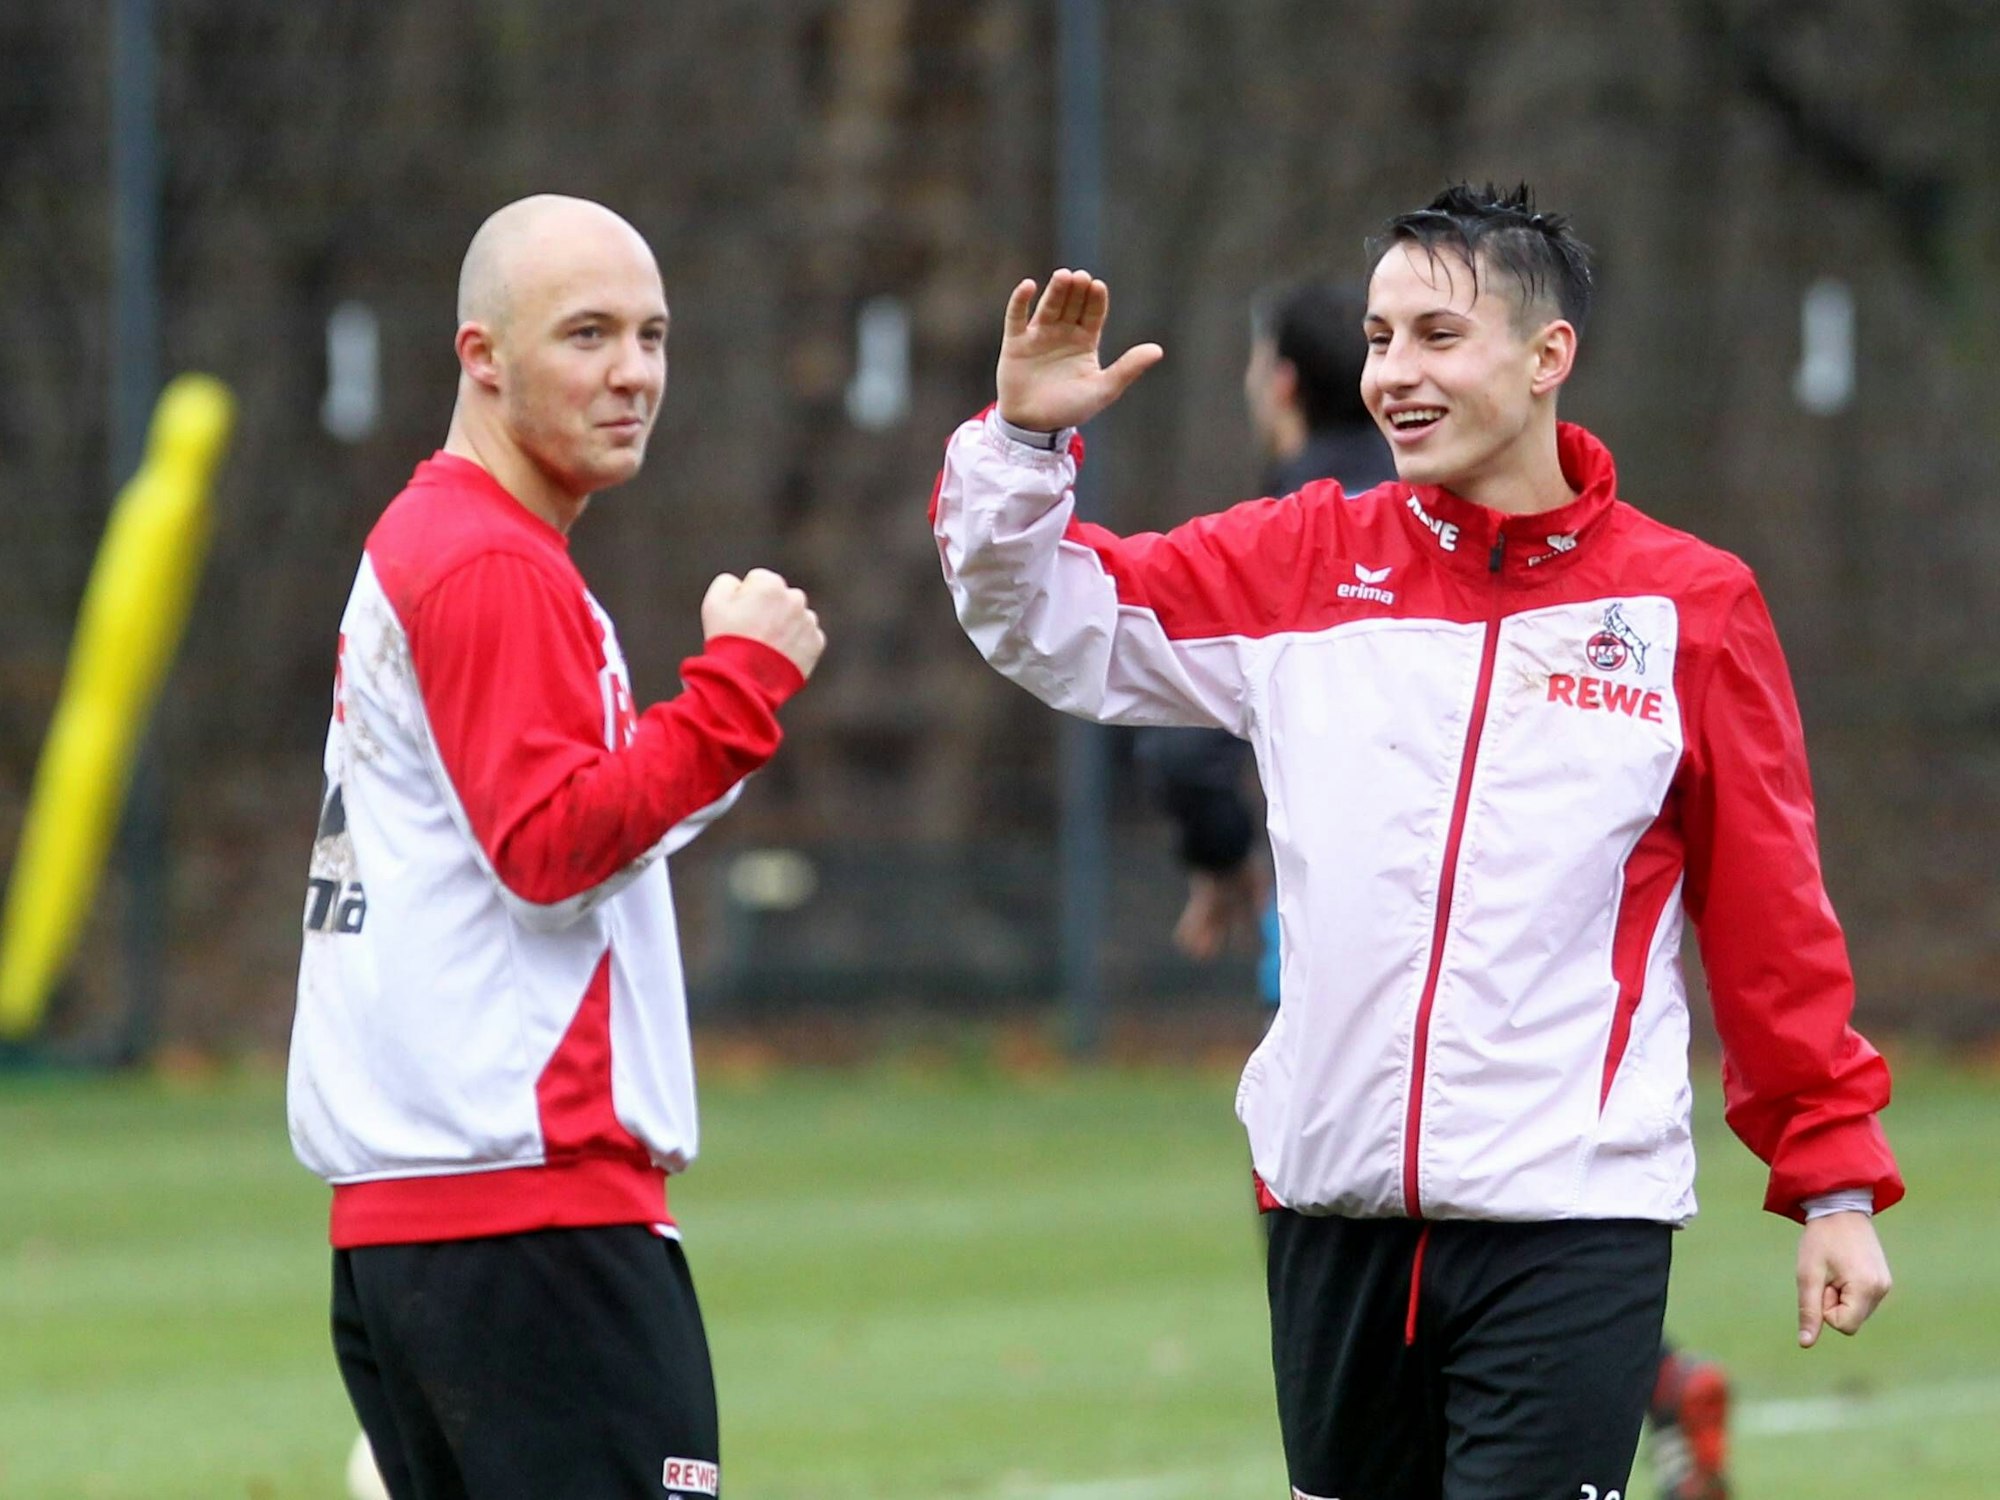 Maurice Exslager und Fabian Schnellhardt beim Training des 1. FC Köln.